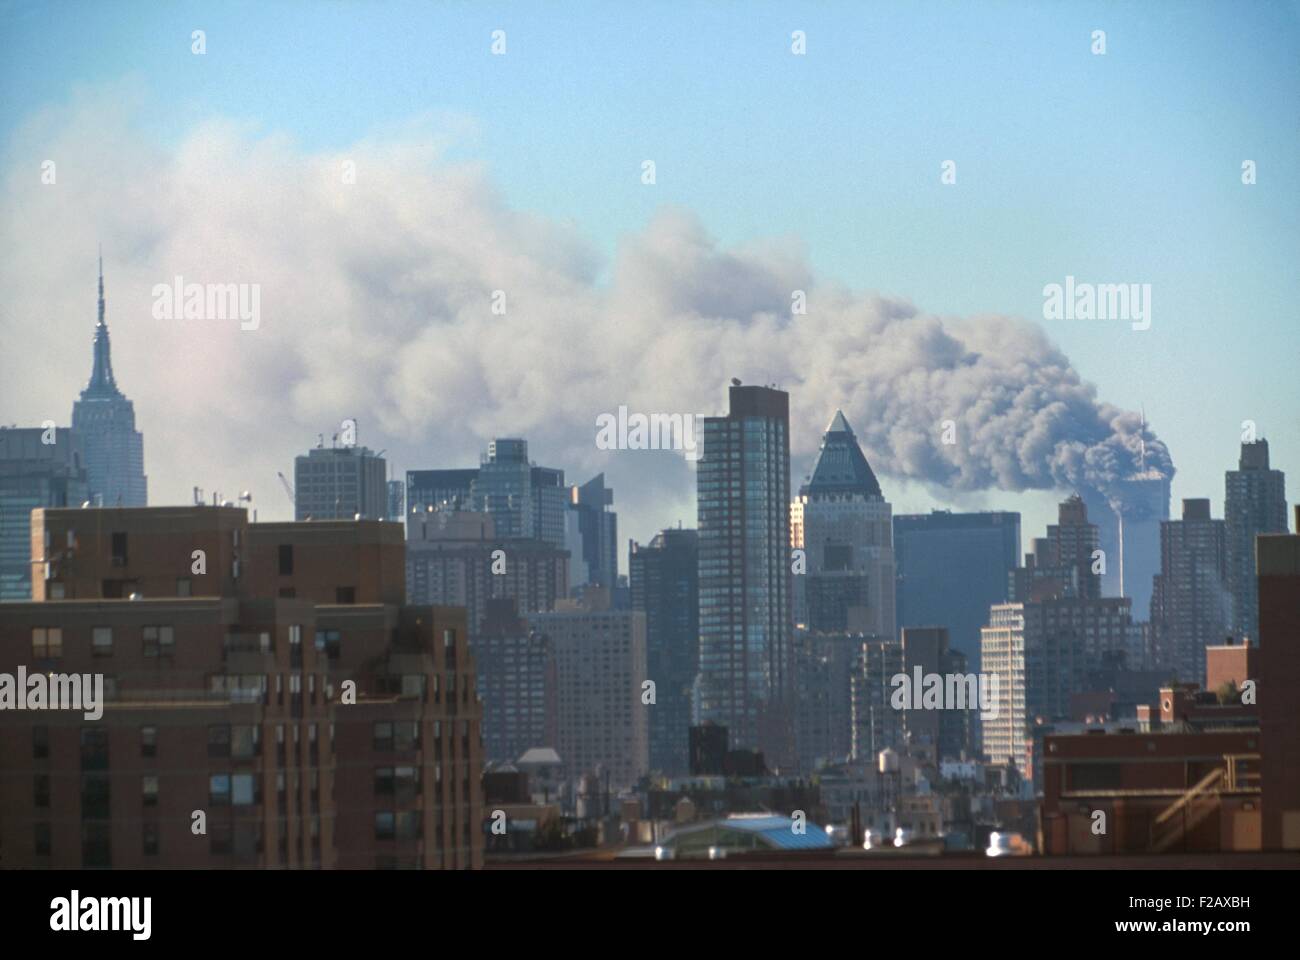 Rauch aus den Twin Towers folgenden wogenden September 11. terroristischen Angriff auf World Trade Center. Foto von der Midtown West in der Nähe von 60th Street innerhalb der ersten 72 Minuten des Angriffs. New York City, 11. September 2001. (BSLOC_2015_2_39) Stockfoto